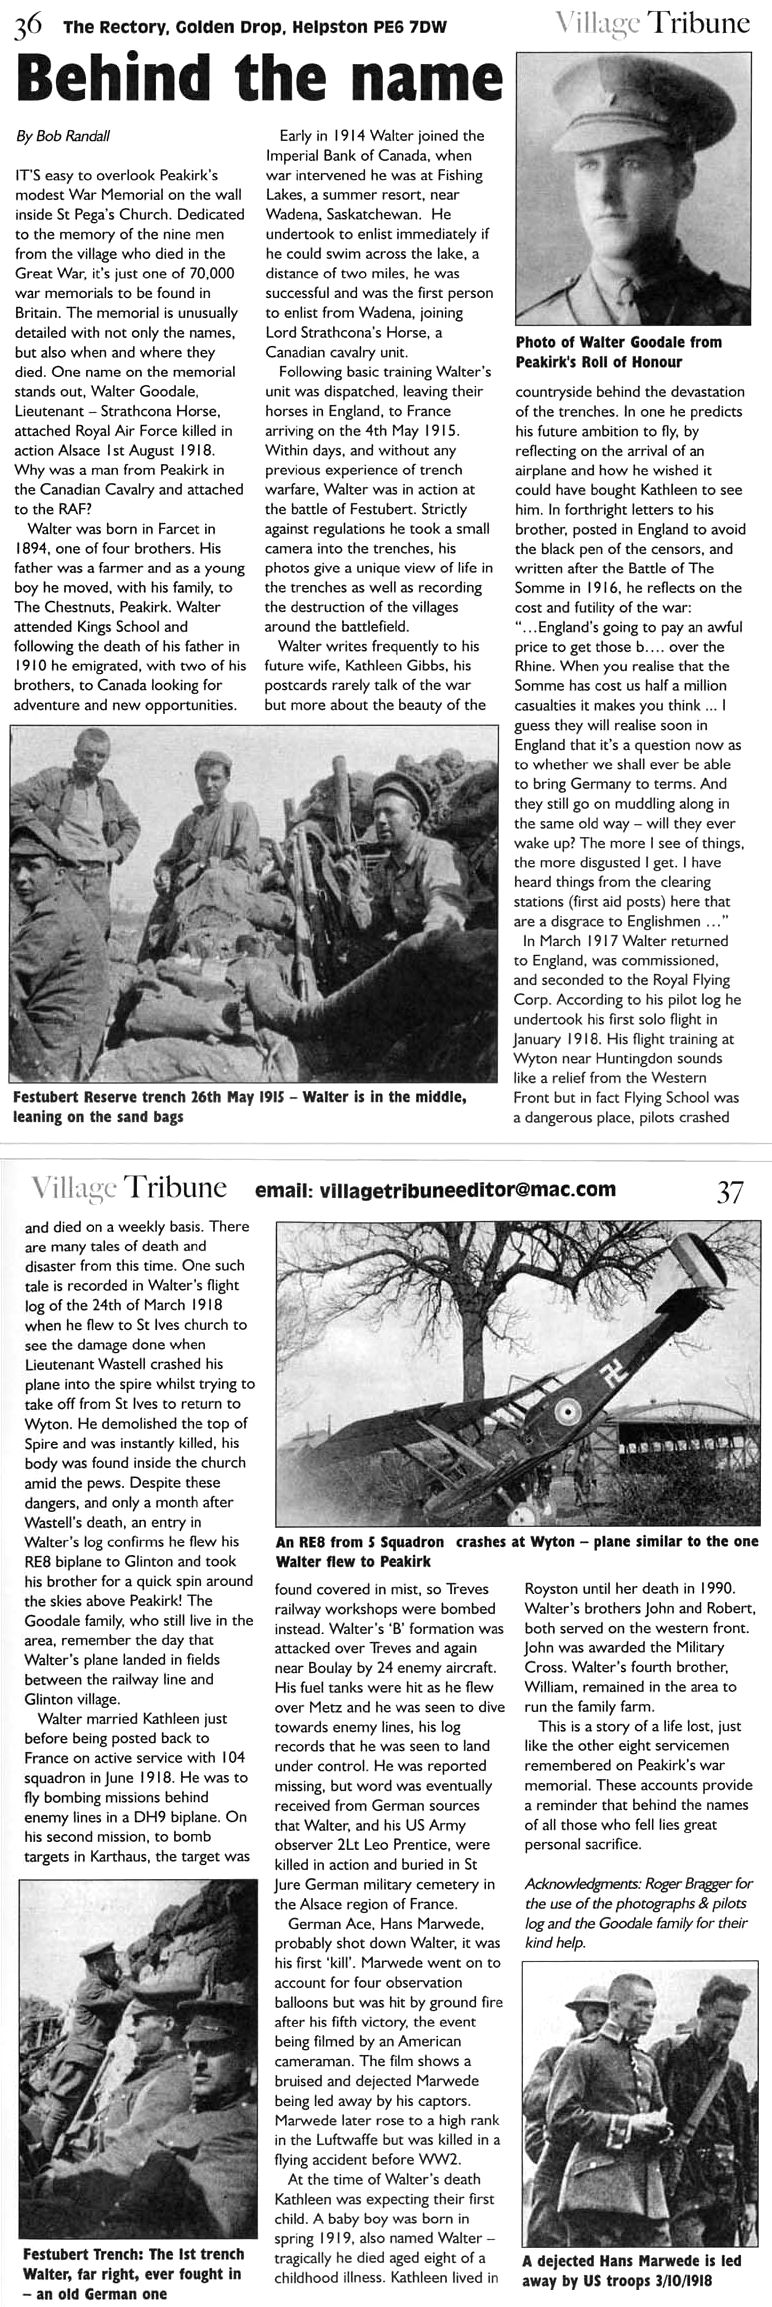 Village Tribune Article